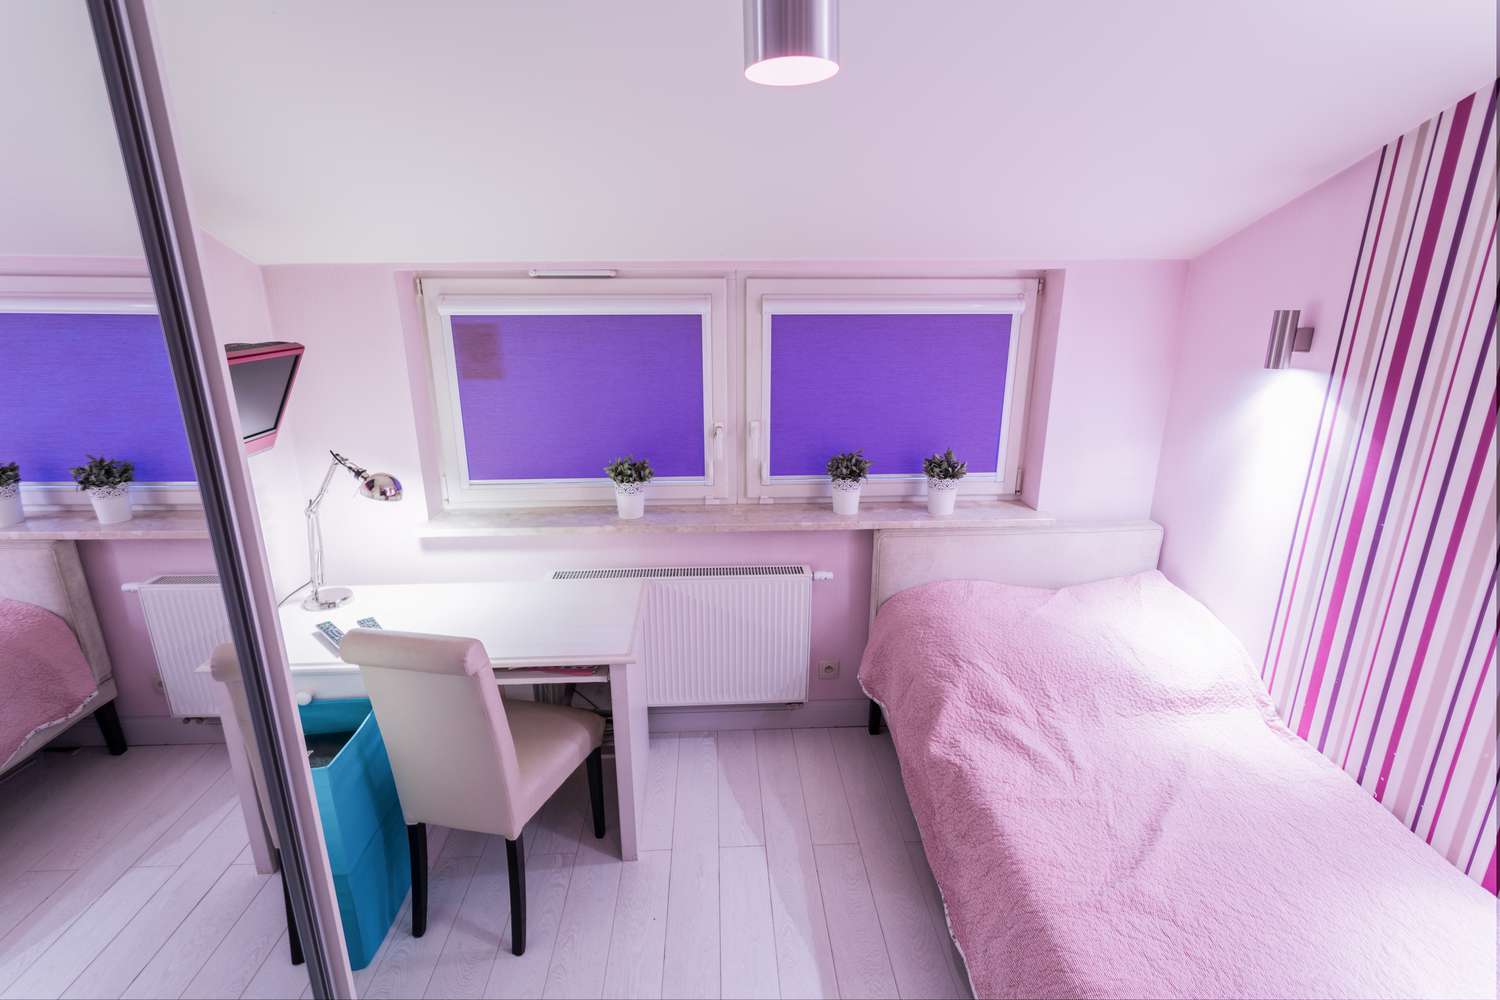 Papel pintado a rayas rosas y moradas en la habitación de una adolescente.